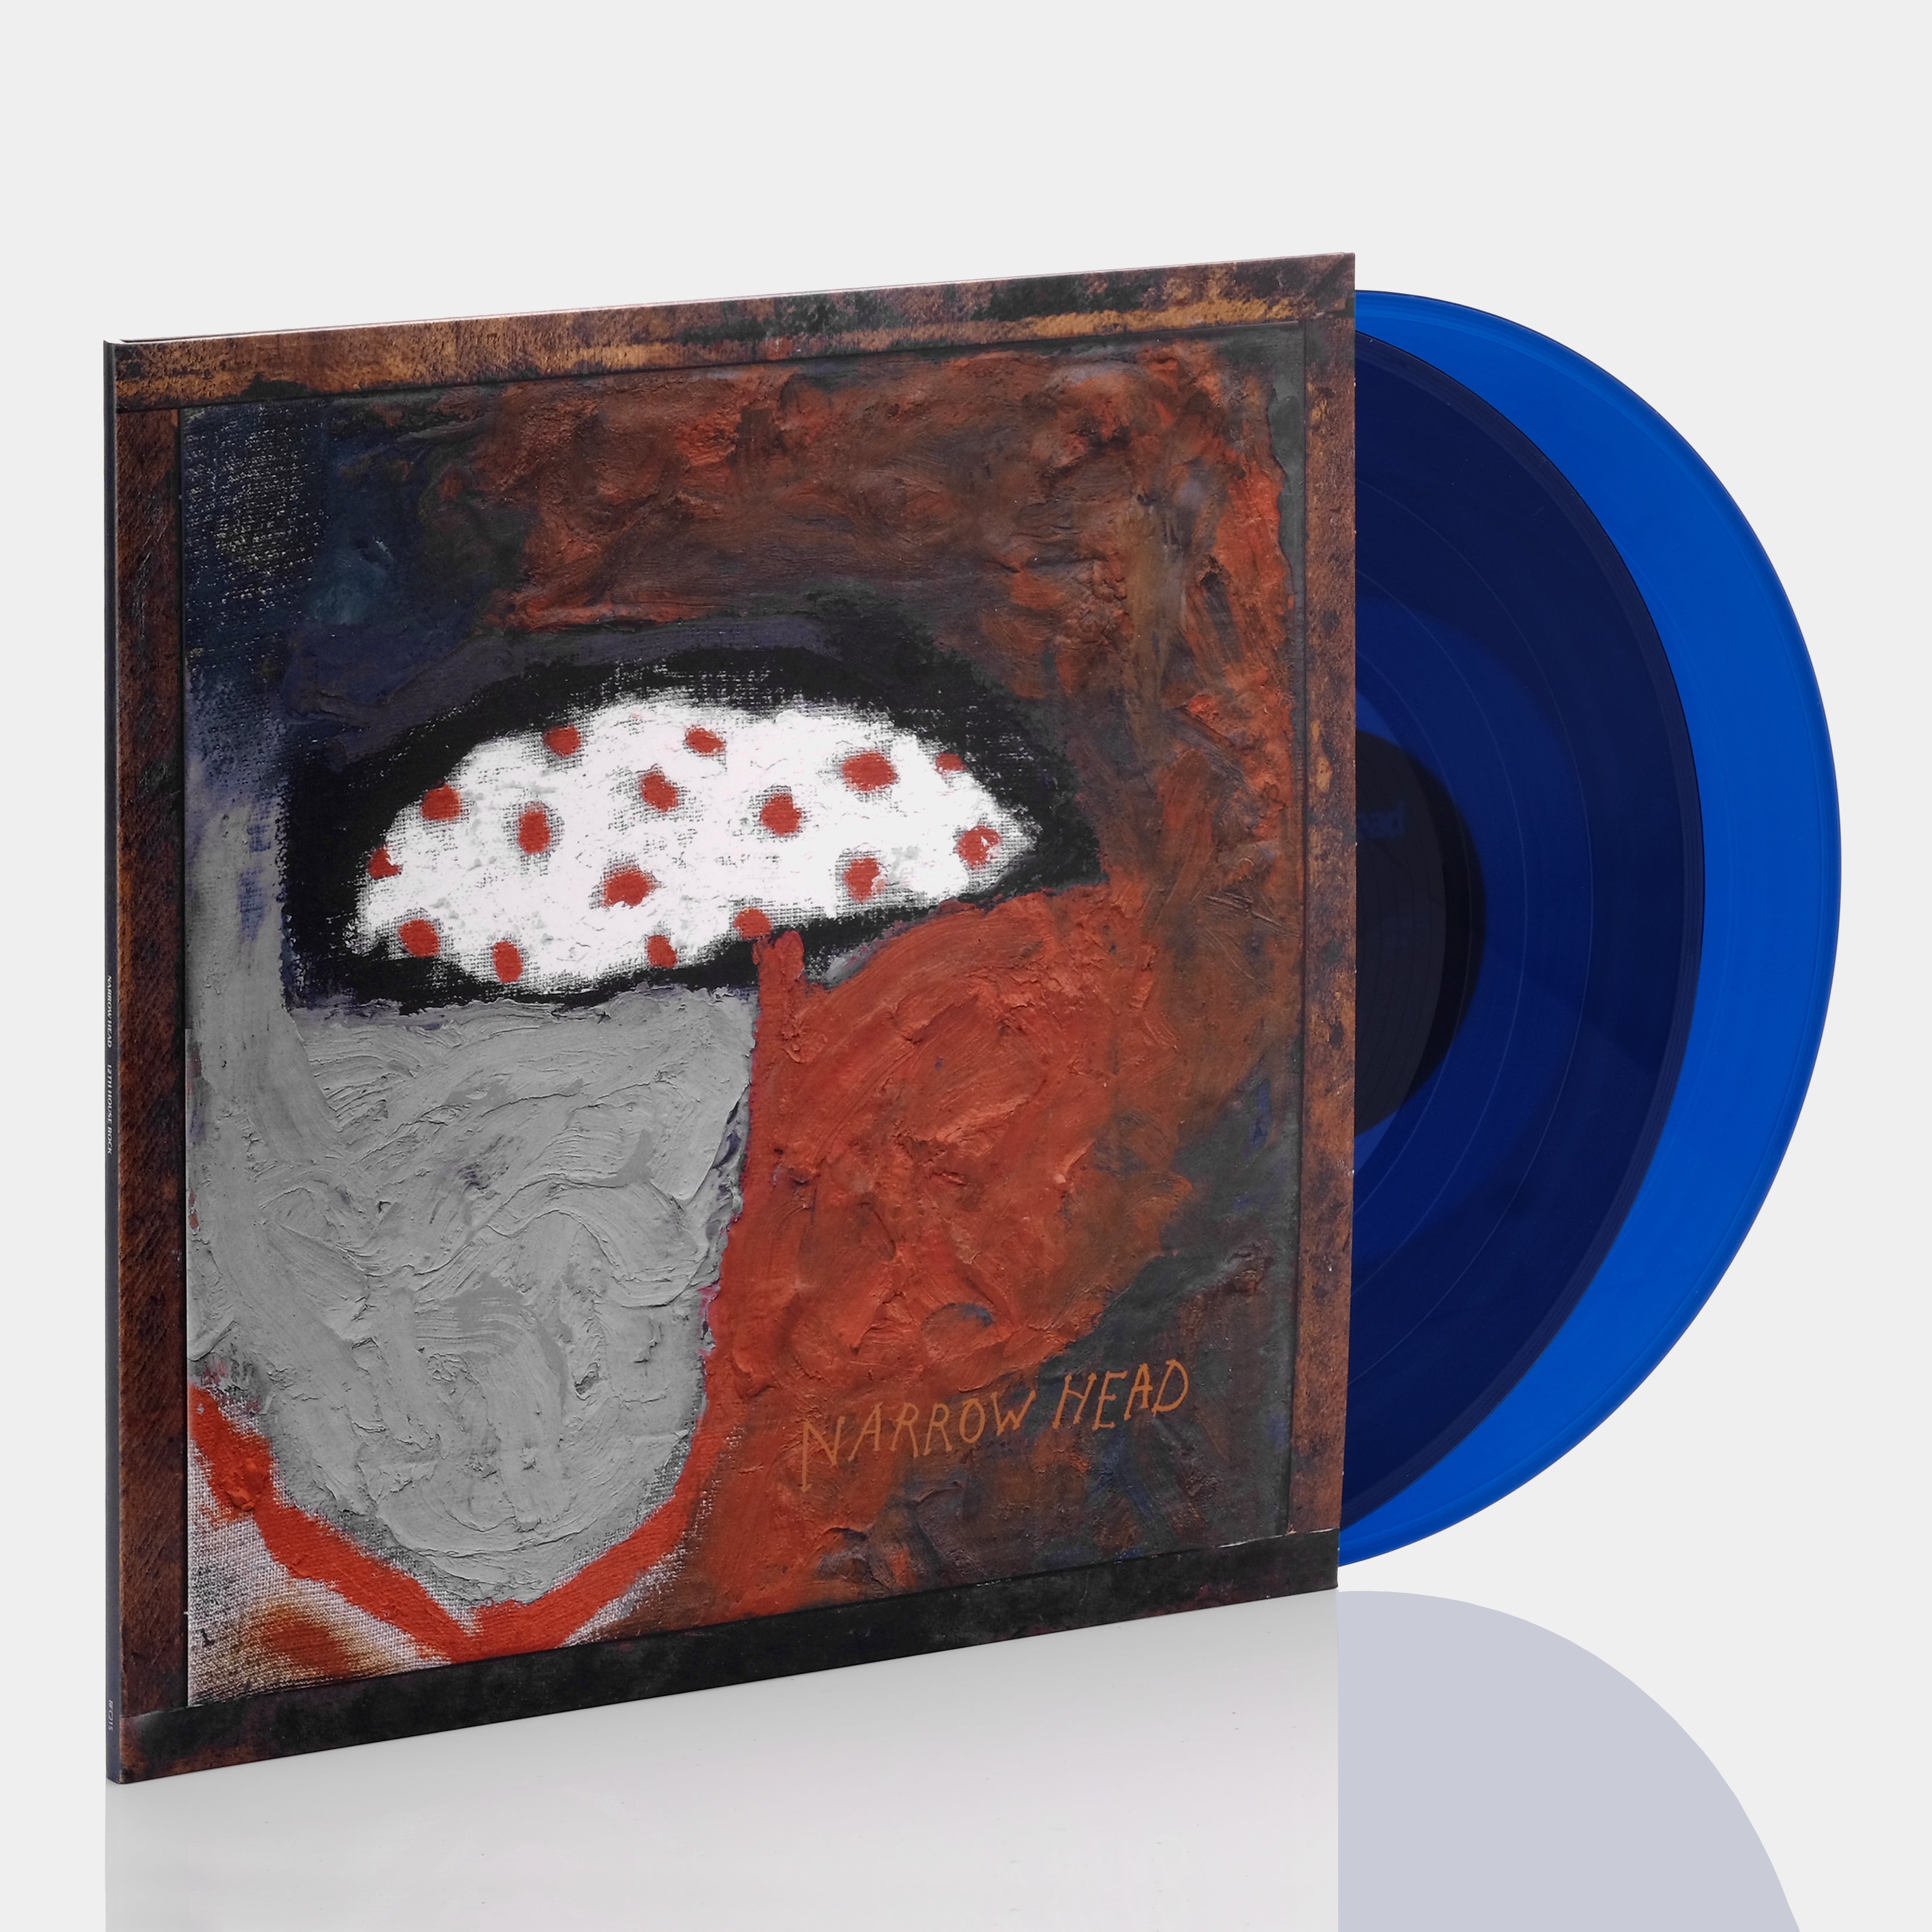 Narrow Head - 12th House Rock 2xLP Deep Blue Vinyl Record